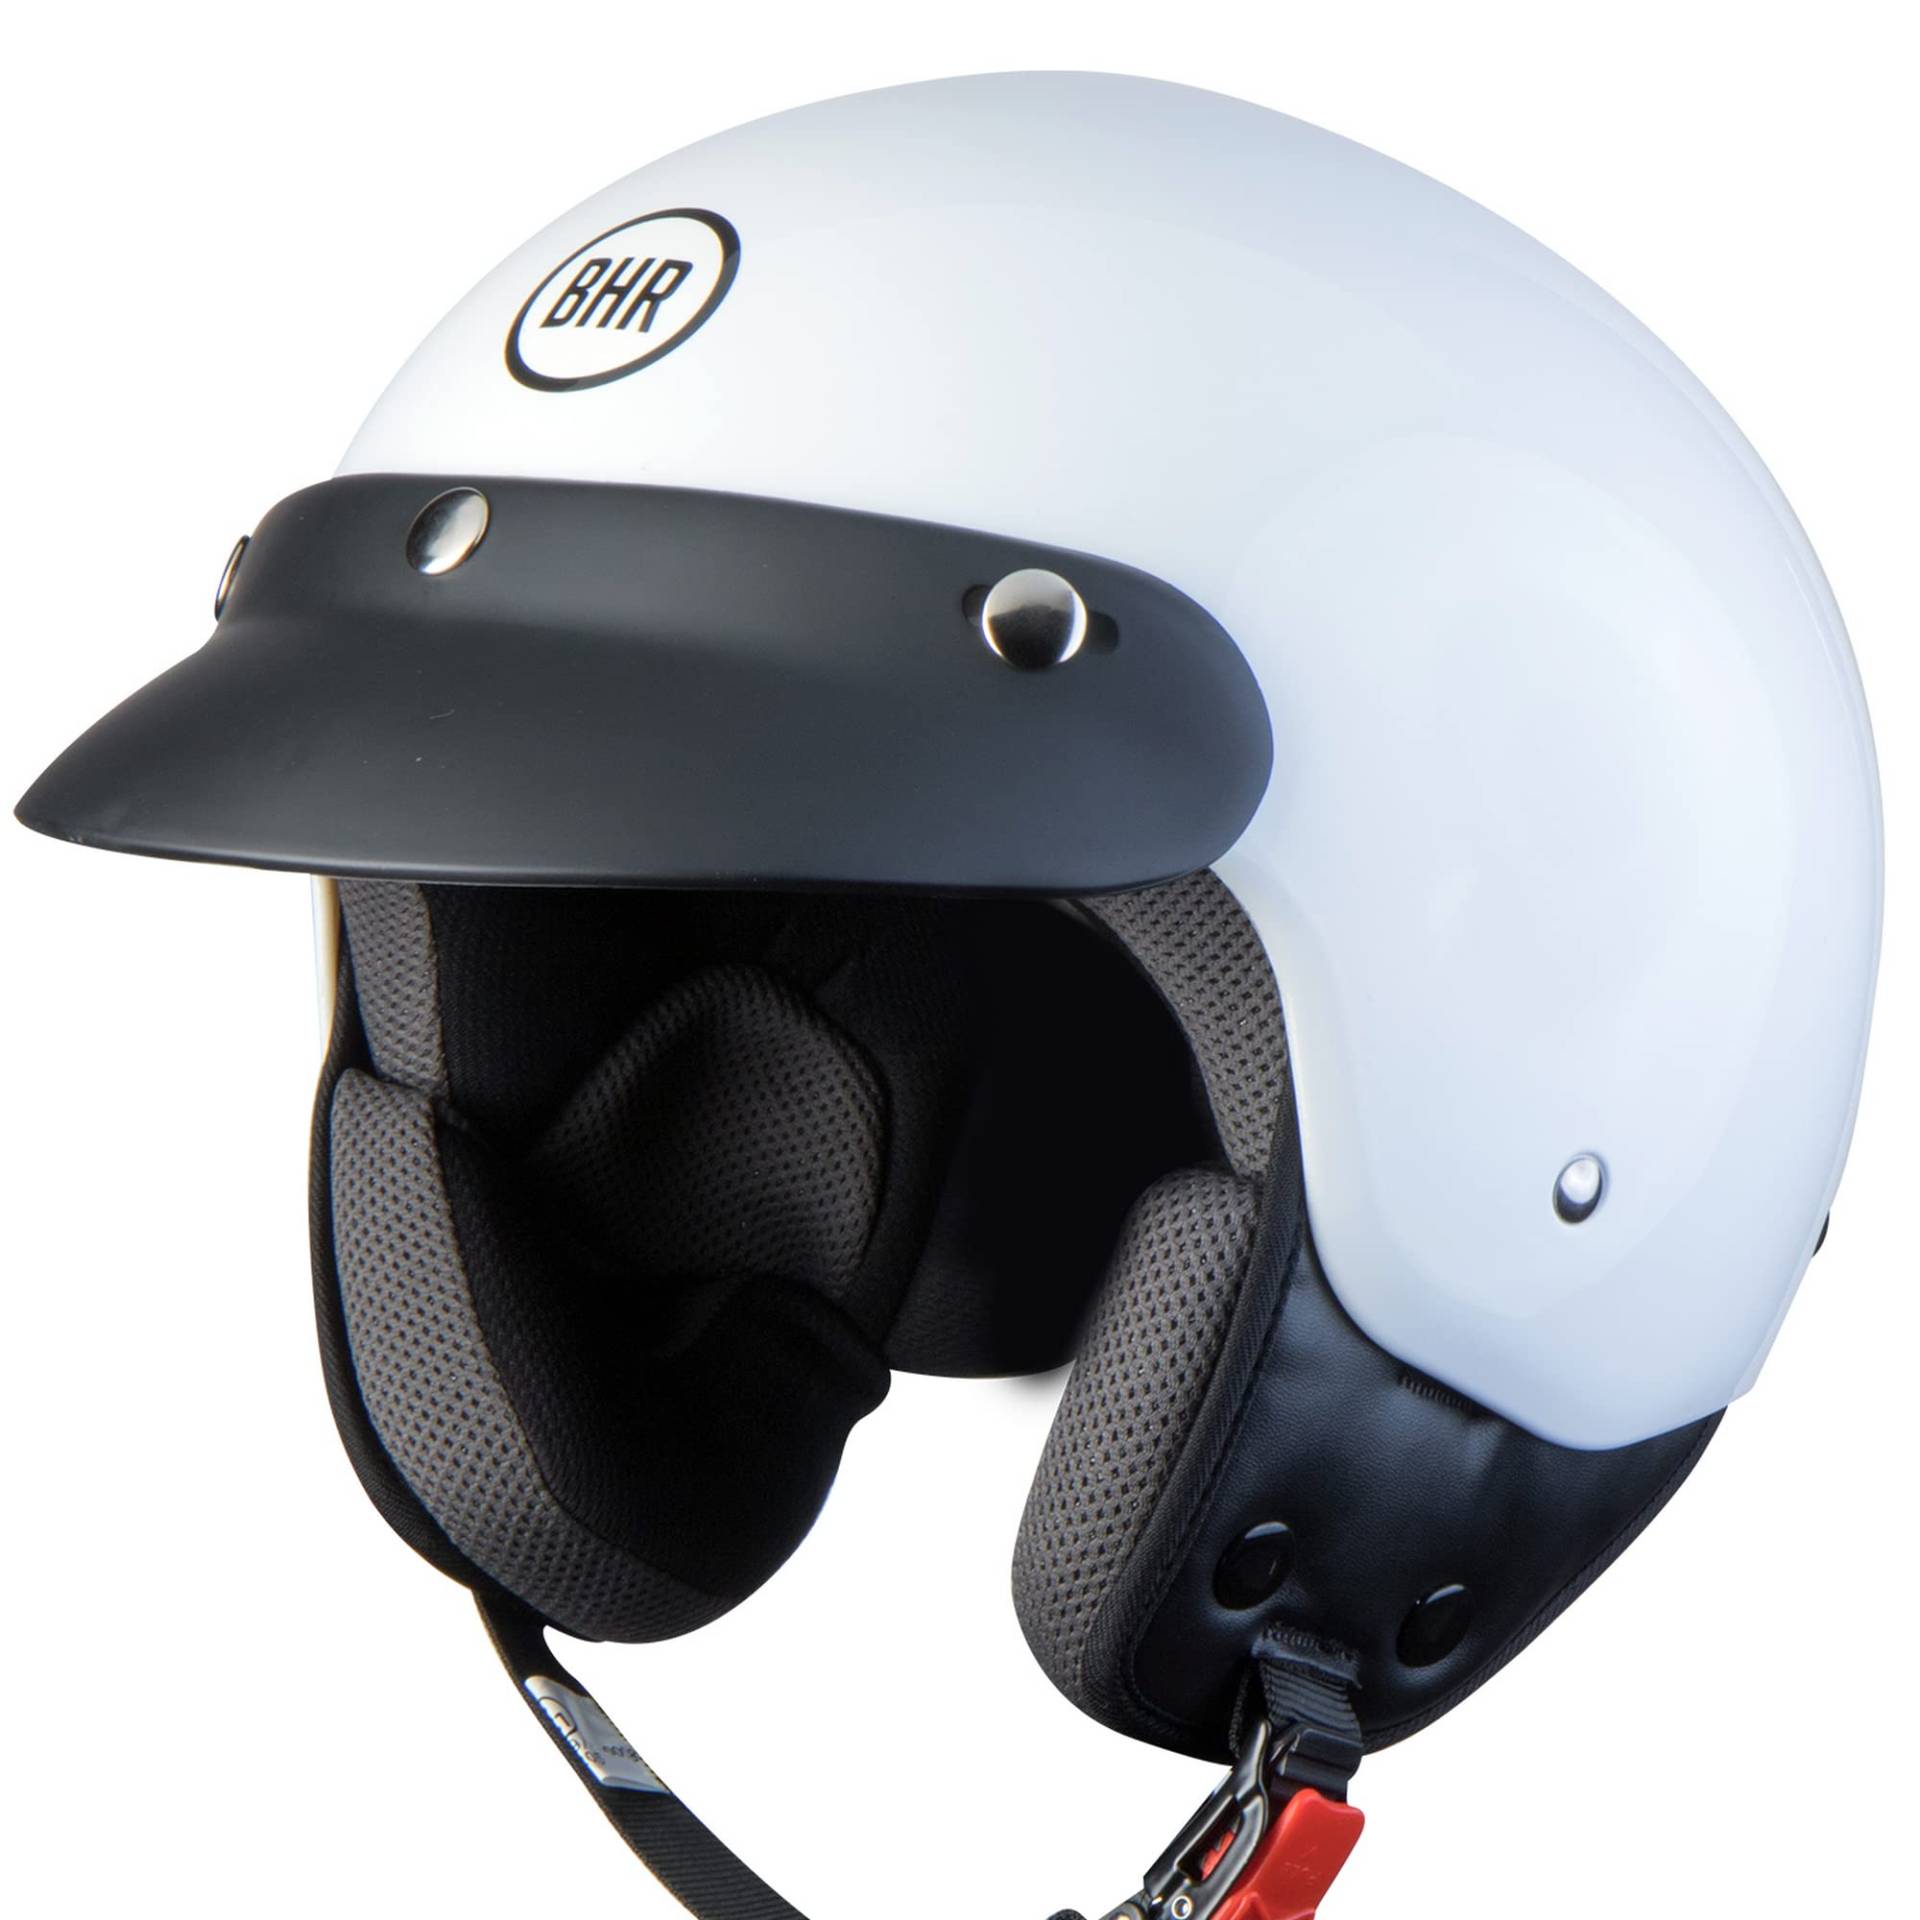 BHR Demi-Jet Helm 803 Simply, Praktischer Rollerhelm mit ECE-Zulassung, Motorrad-Jet-Helm mit abnehmbarem Gesichtspolster, Weiss, XS von BHR